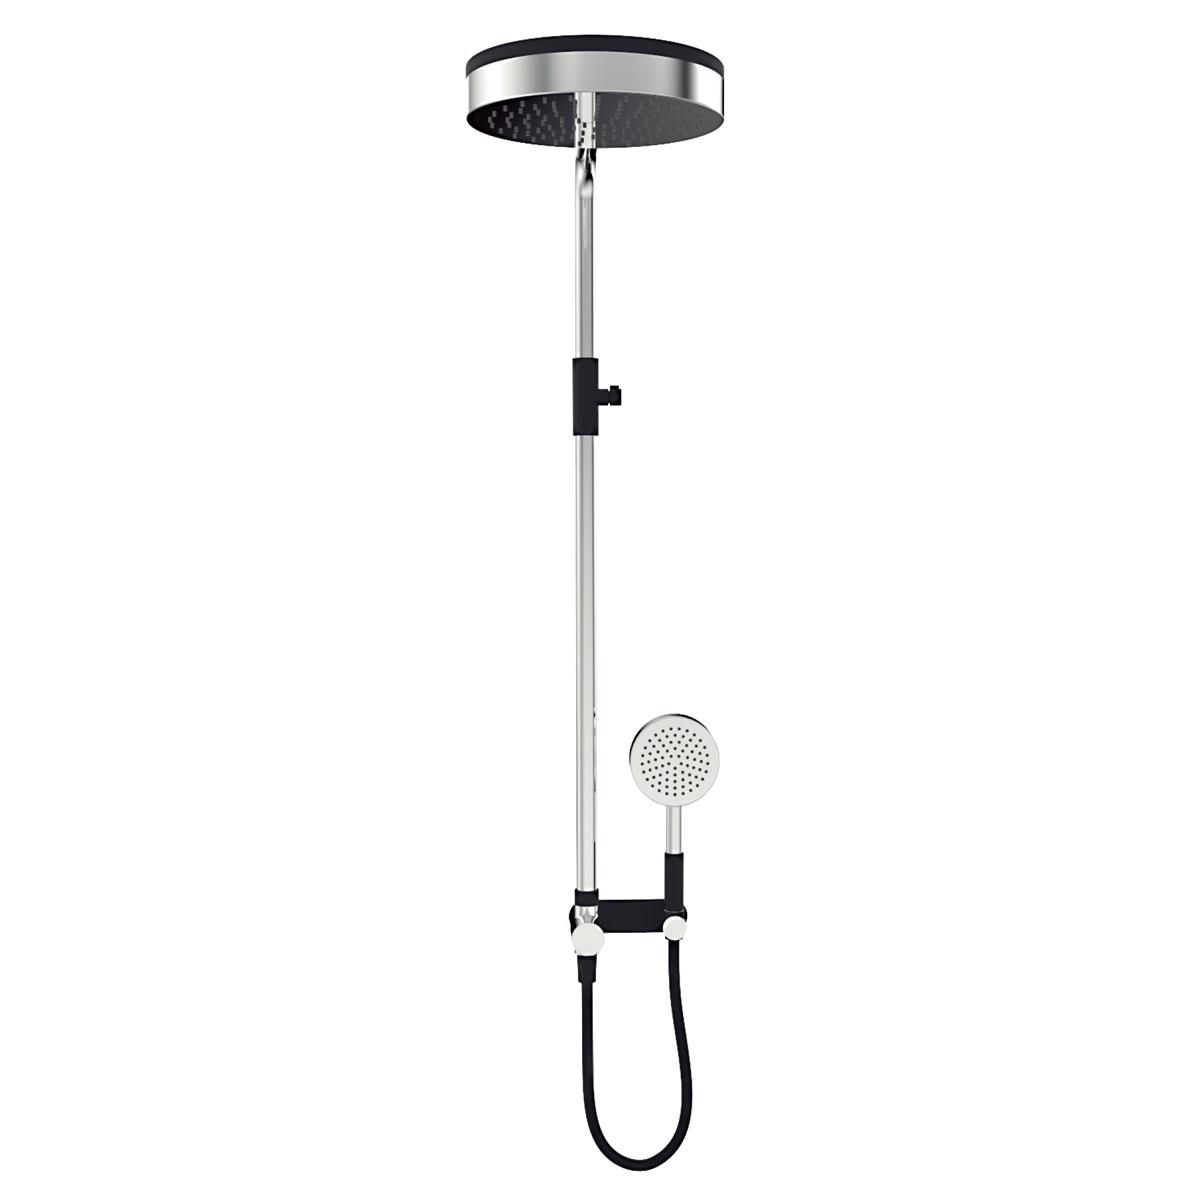 YS34207C	Luxury shower column, rain shower column with diverter, height adjustable;